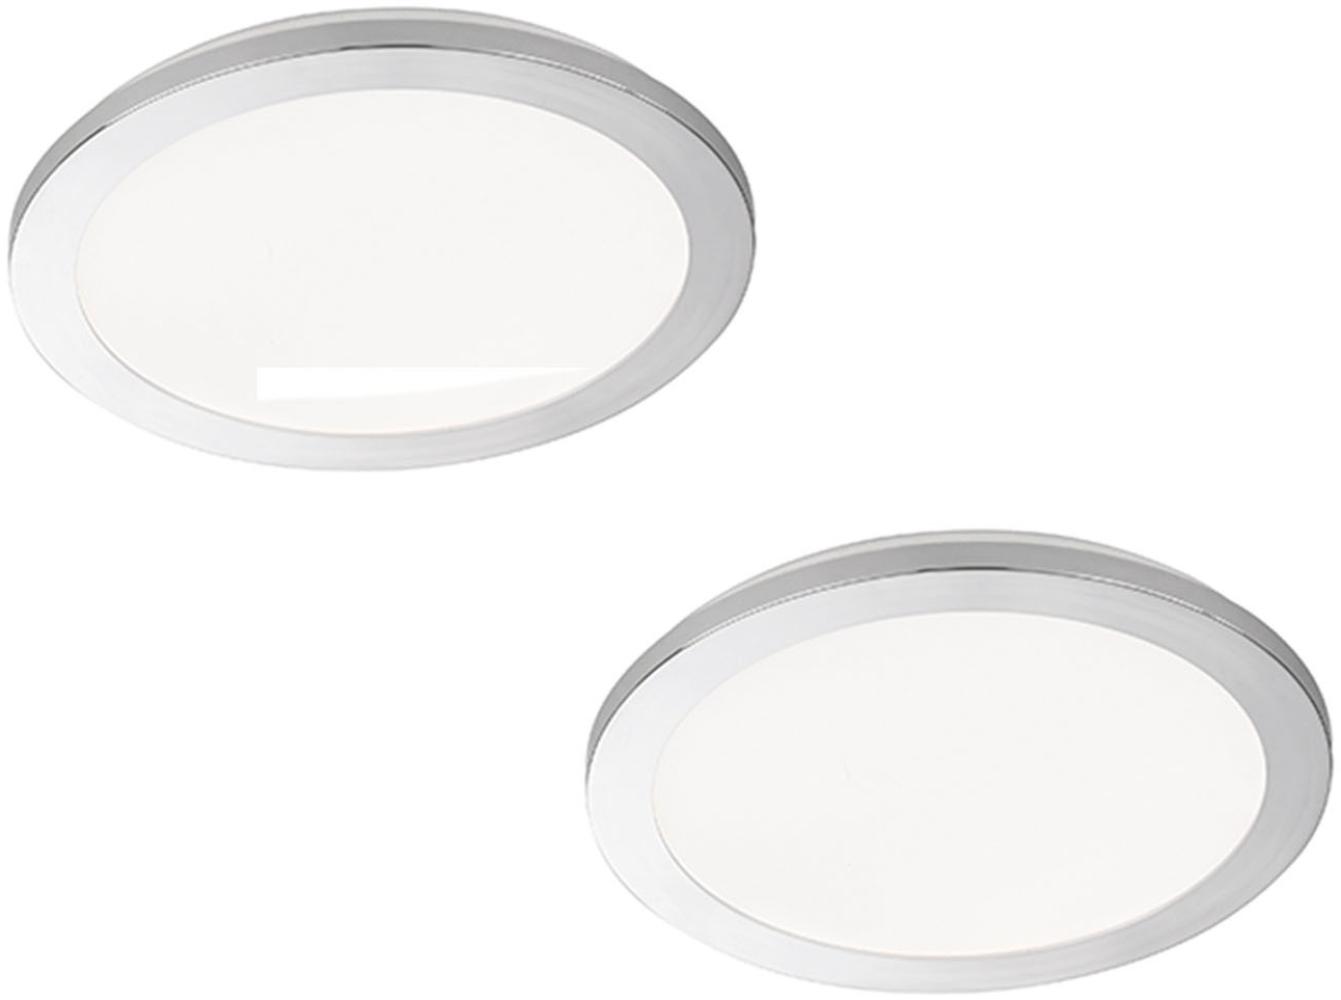 Dimmbares LED Deckenleuchtenset: 2 IP44 Deckenschalen Ø 40cm, Chrom / Acryl weiß Bild 1